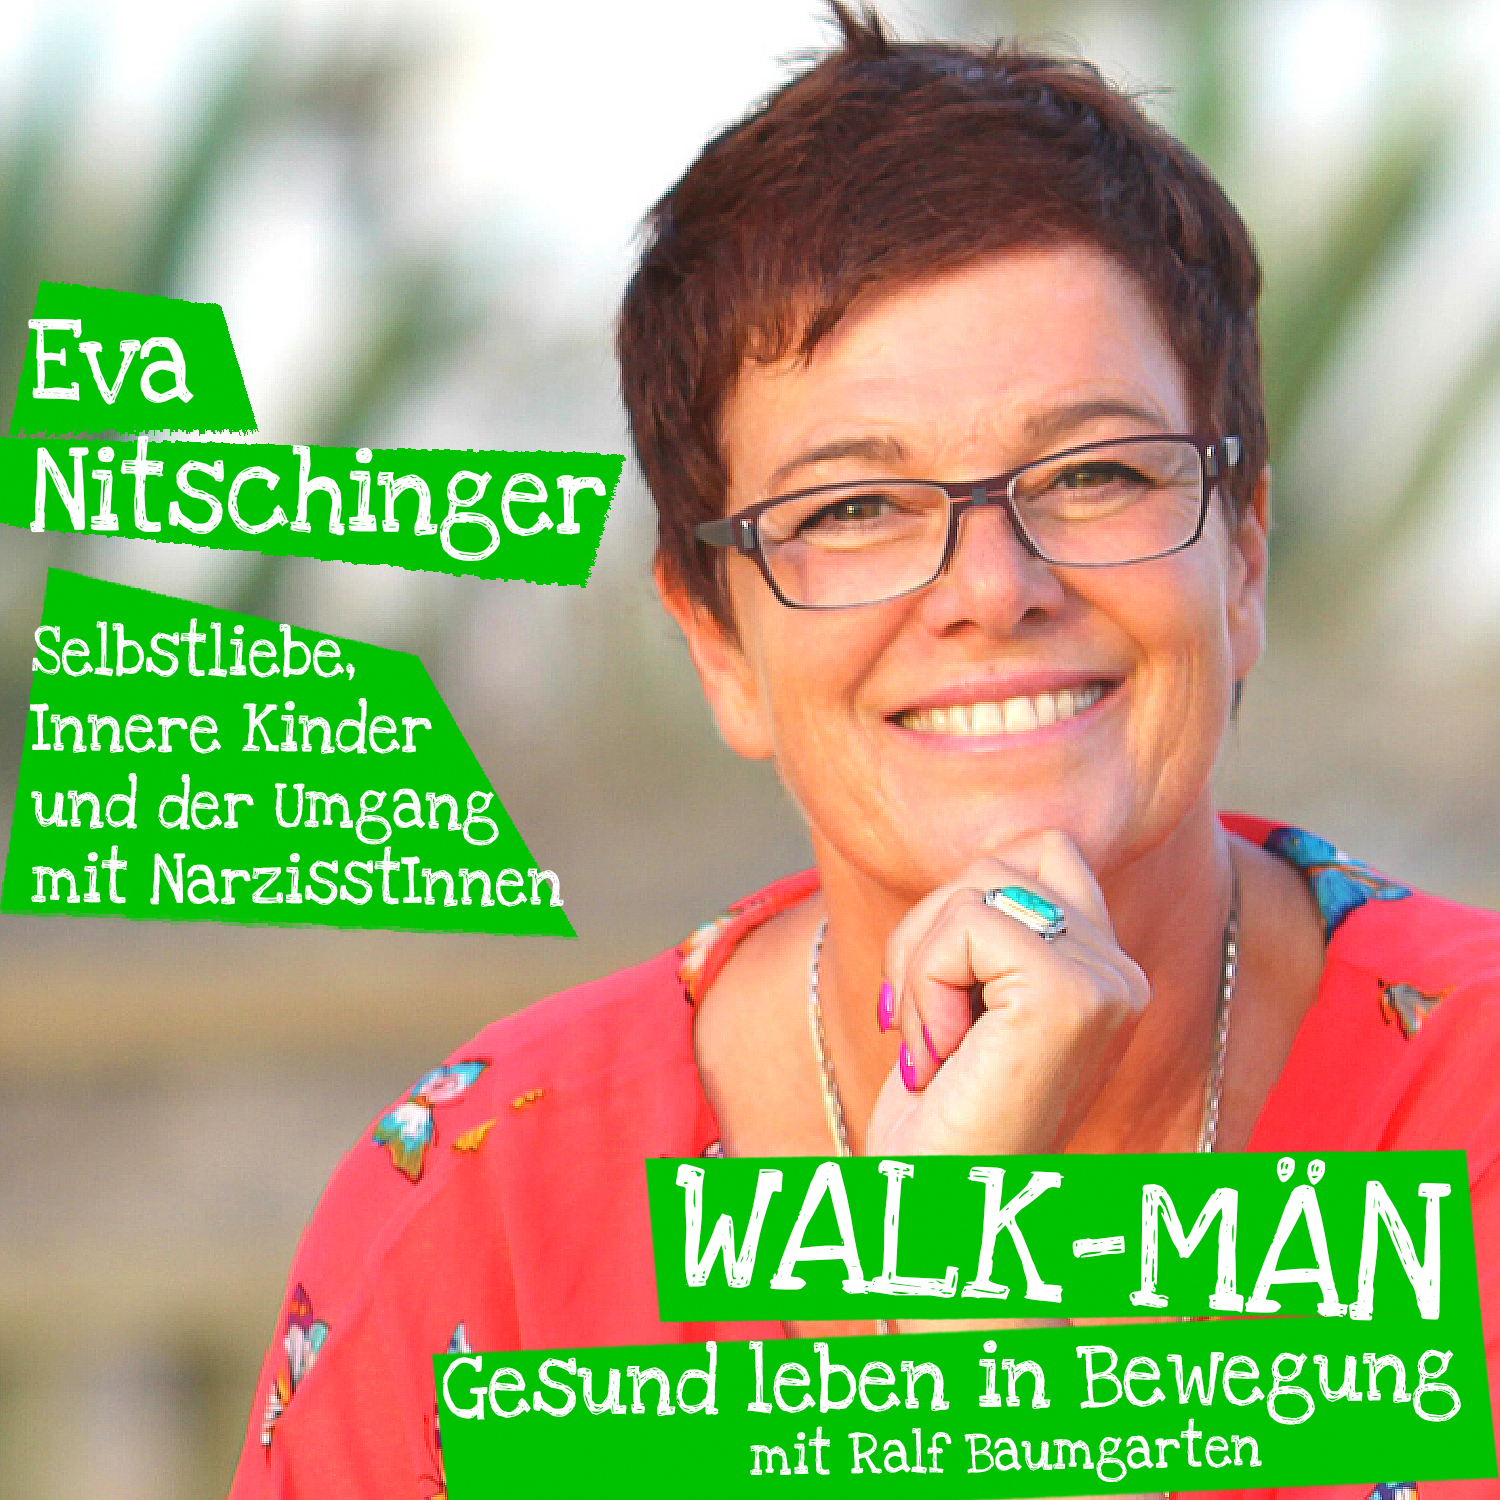 Eva Nitschinger ist die Gesprächspartnerin in Podcas-Episode 86